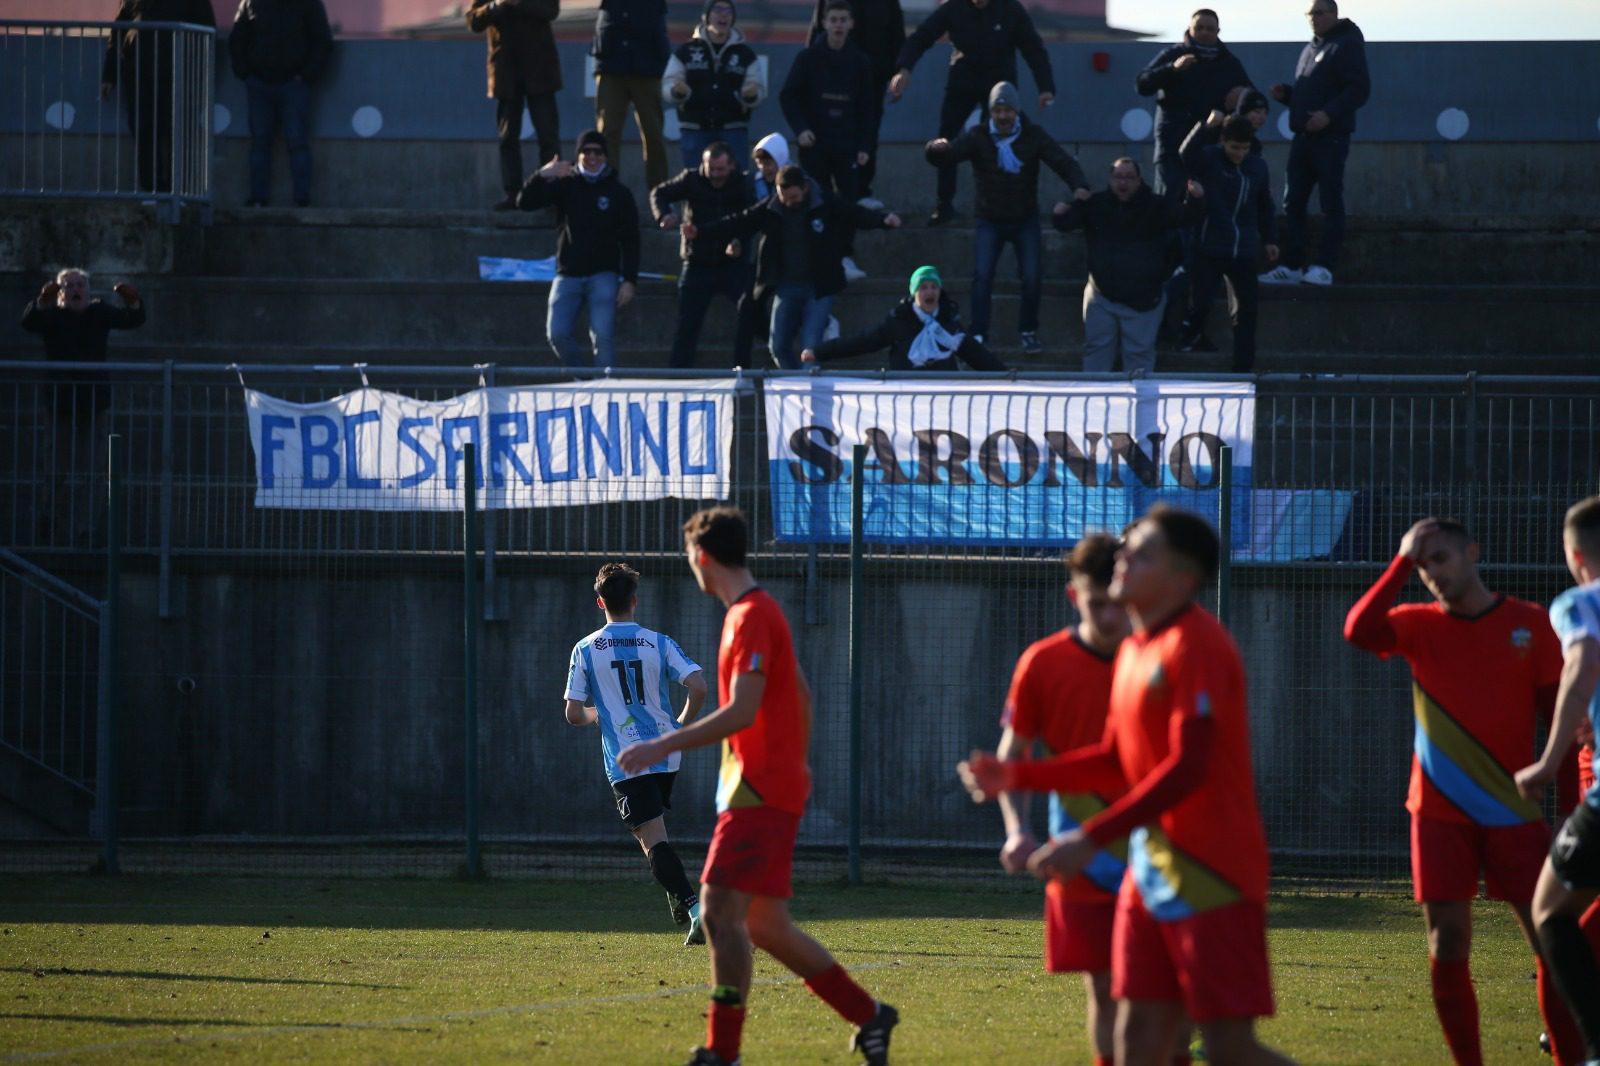 Calcio, Uboldese-Fbc Saronno: tabellino, cronaca, foto e interviste